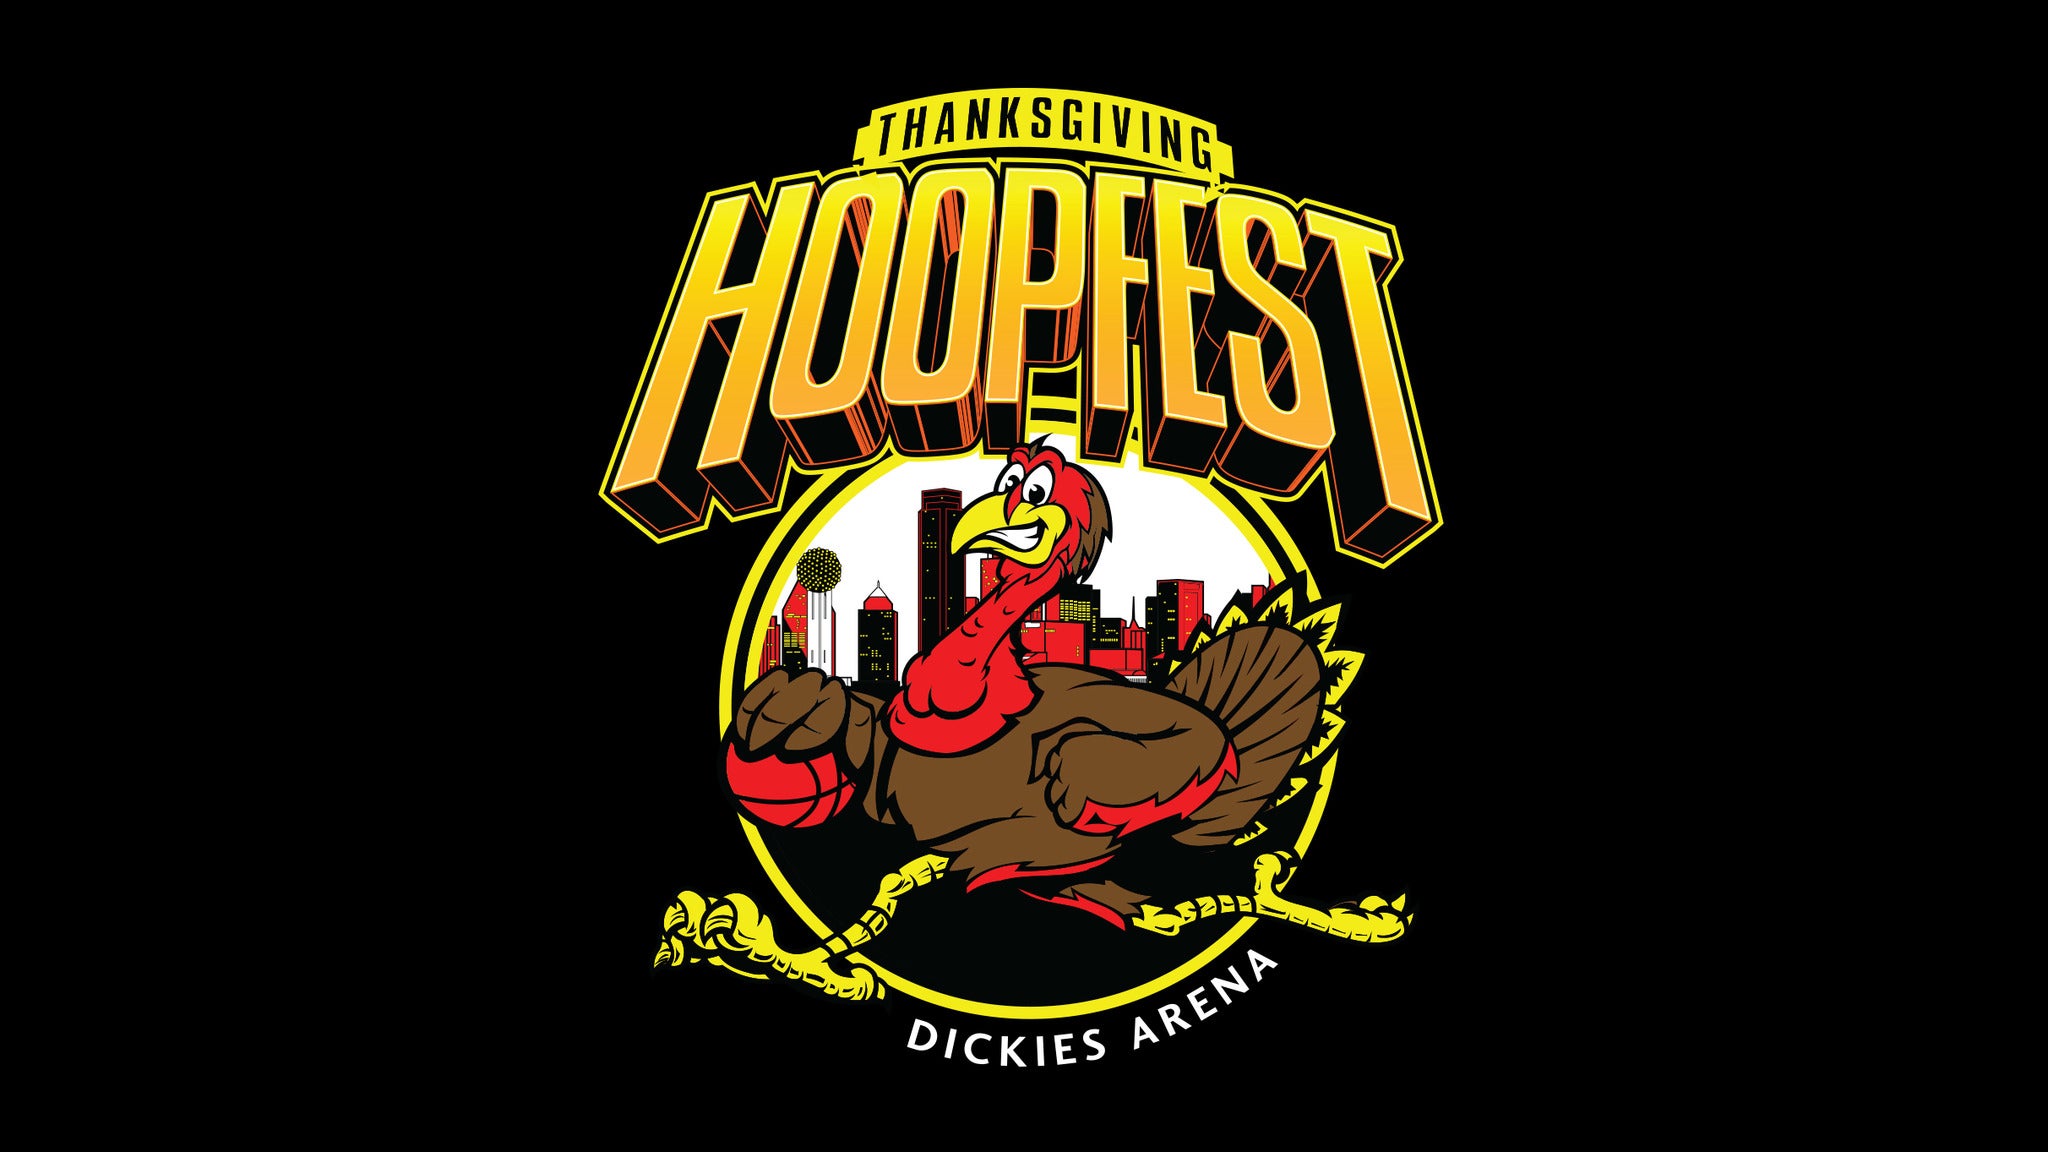 Thanksgiving Hoopfest Tickets Single Game Tickets & Schedule